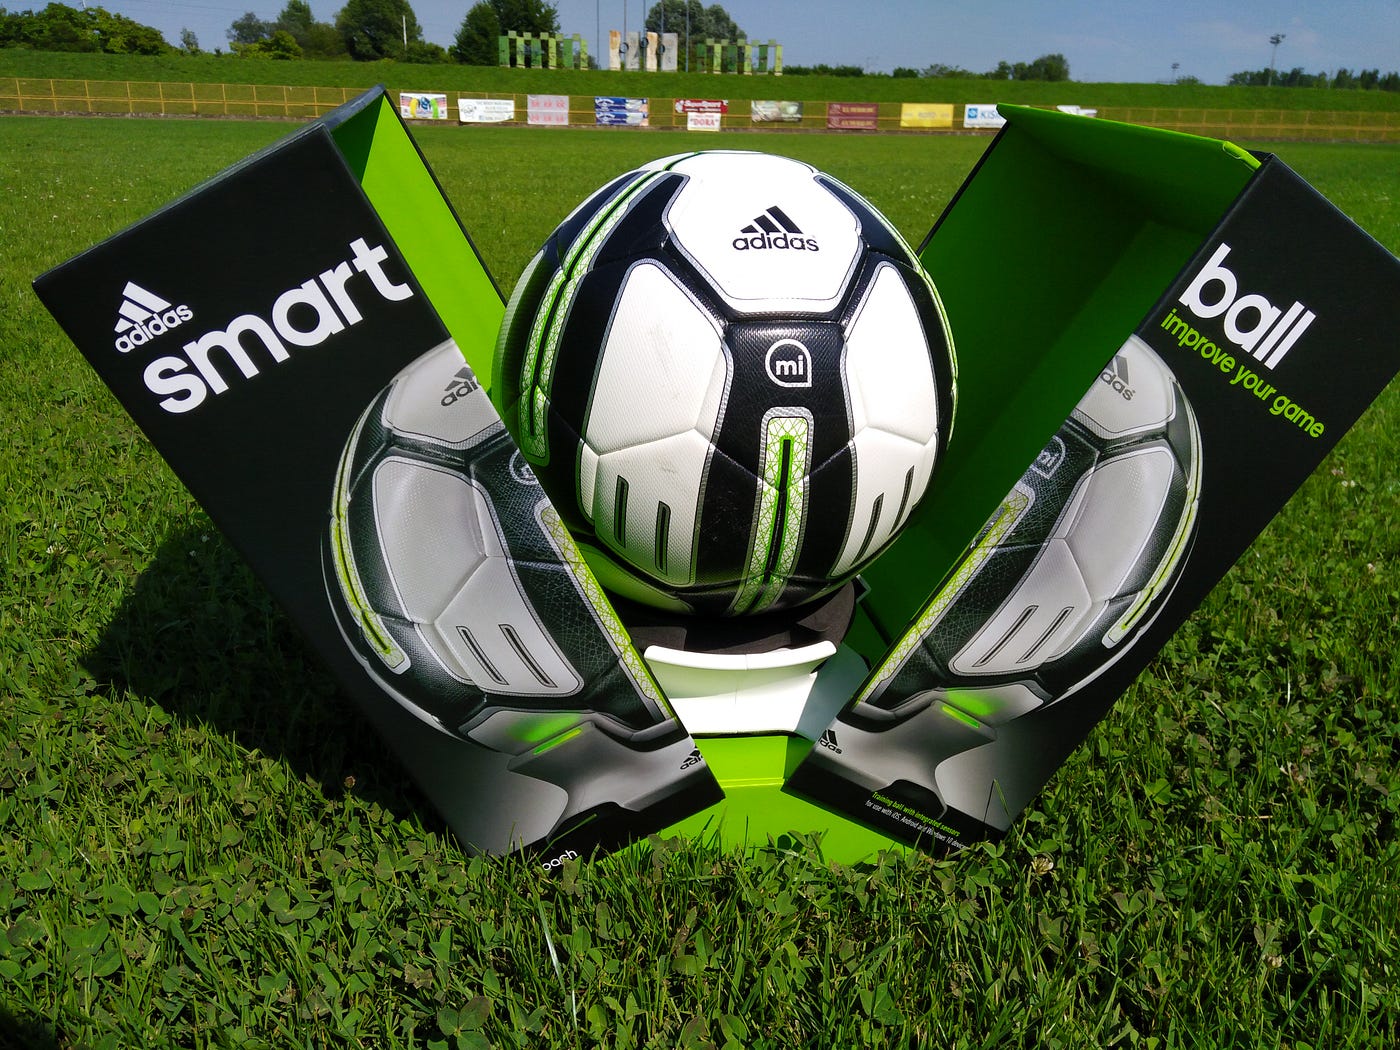 Review: Adidas miCoach Smart Ball | by Matt Marenic | Medium